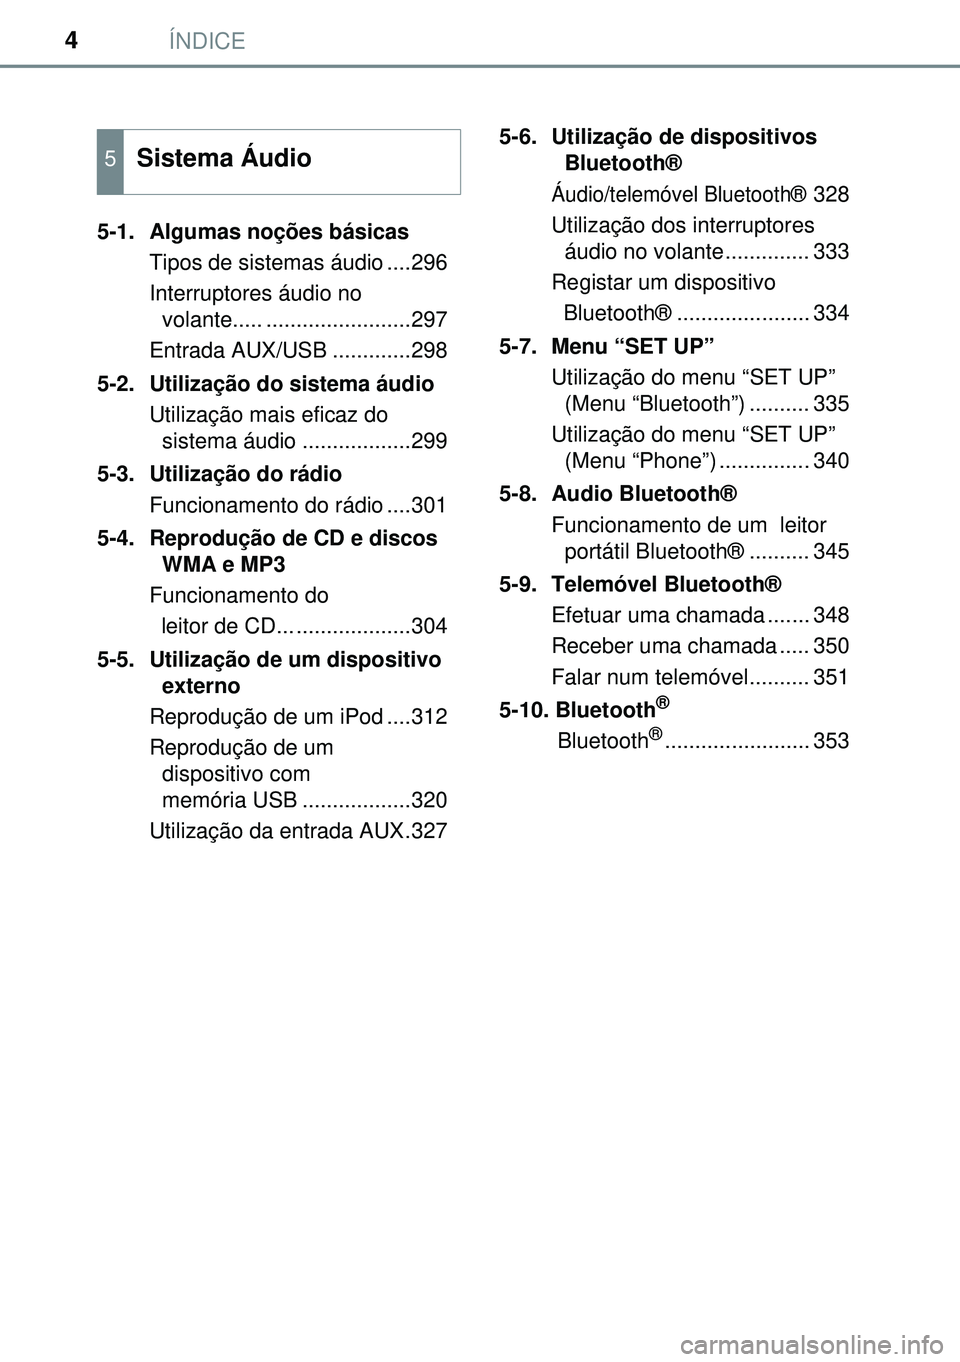 TOYOTA AURIS HYBRID 2015  Manual de utilização (in Portuguese) ÍNDICE4
5-1.  Algumas noções básicas
Tipos de sistemas áudio ....296
Interruptores áudio no 
volante..... ........................297
Entrada AUX/USB .............298
5-2.  Utilização do siste